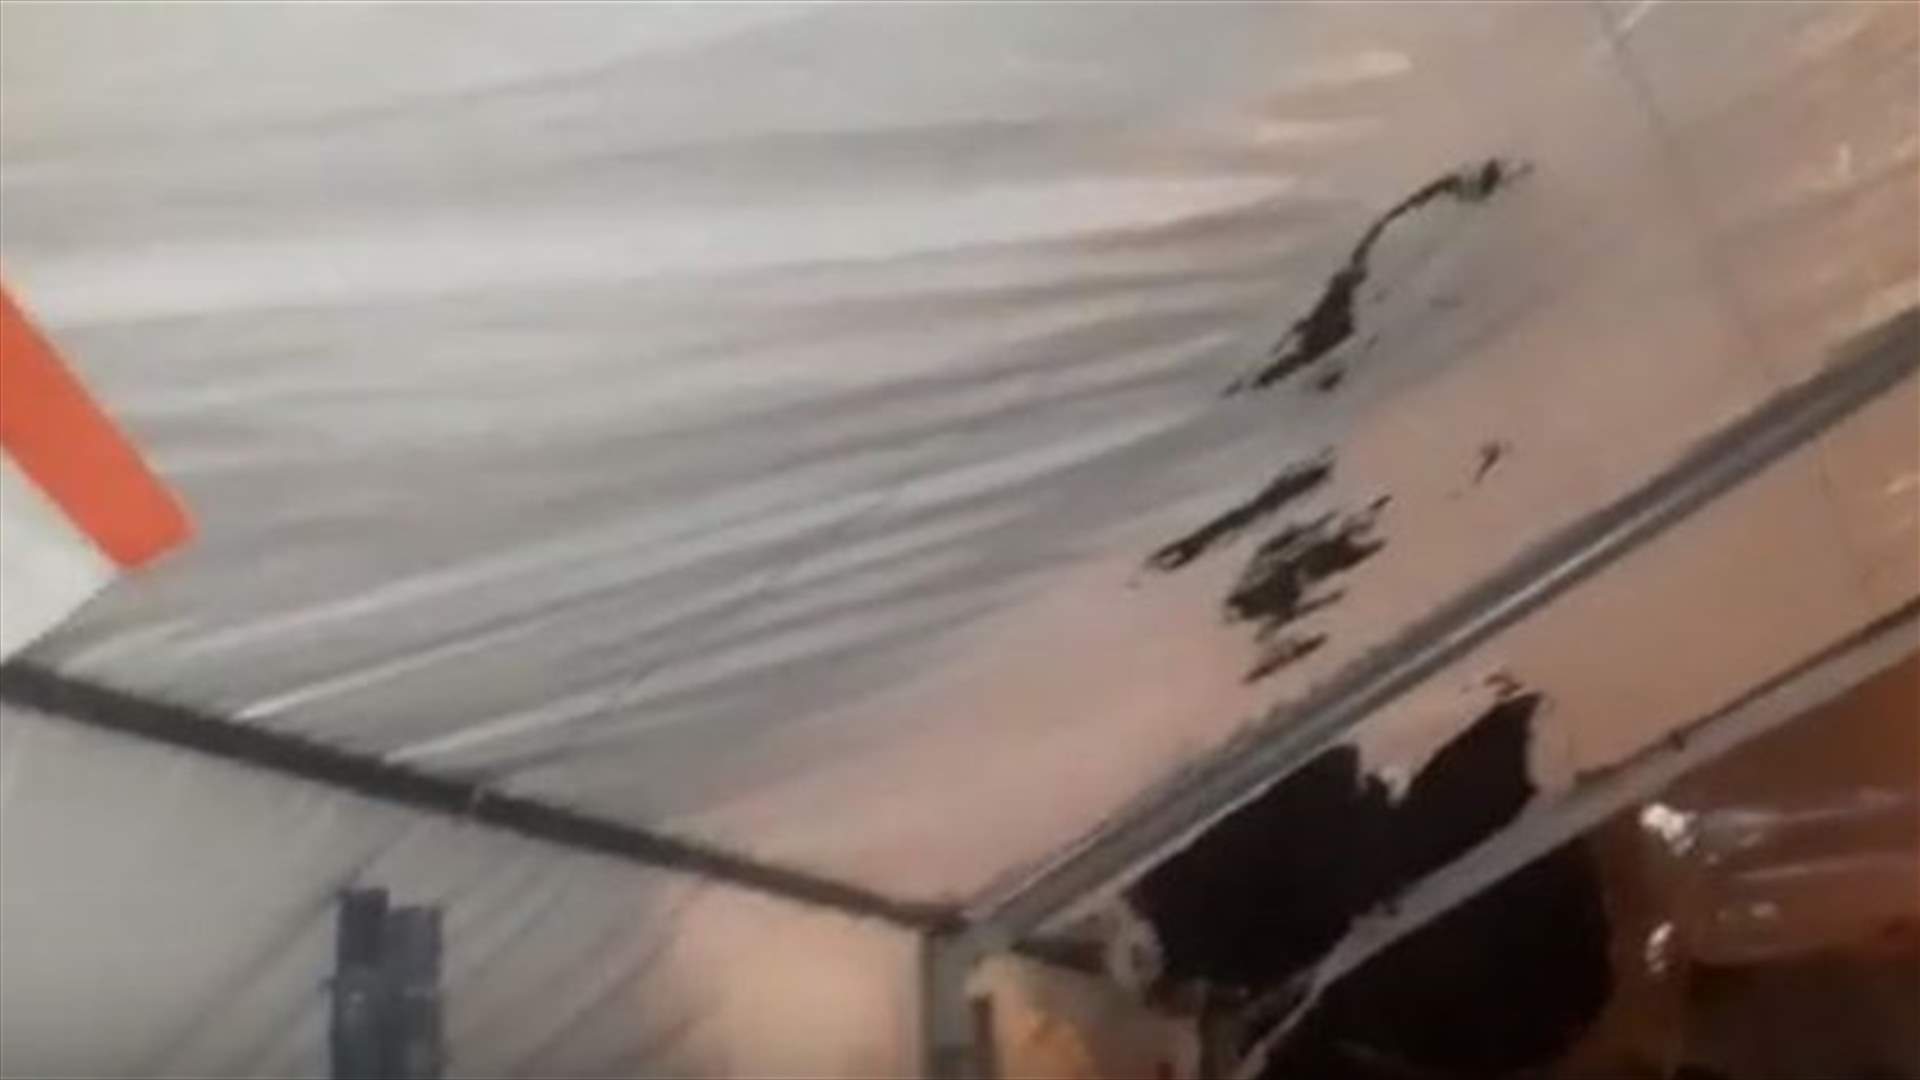 فيديو لخيمة الحراك التي تعرضت للحرق في عاليه...